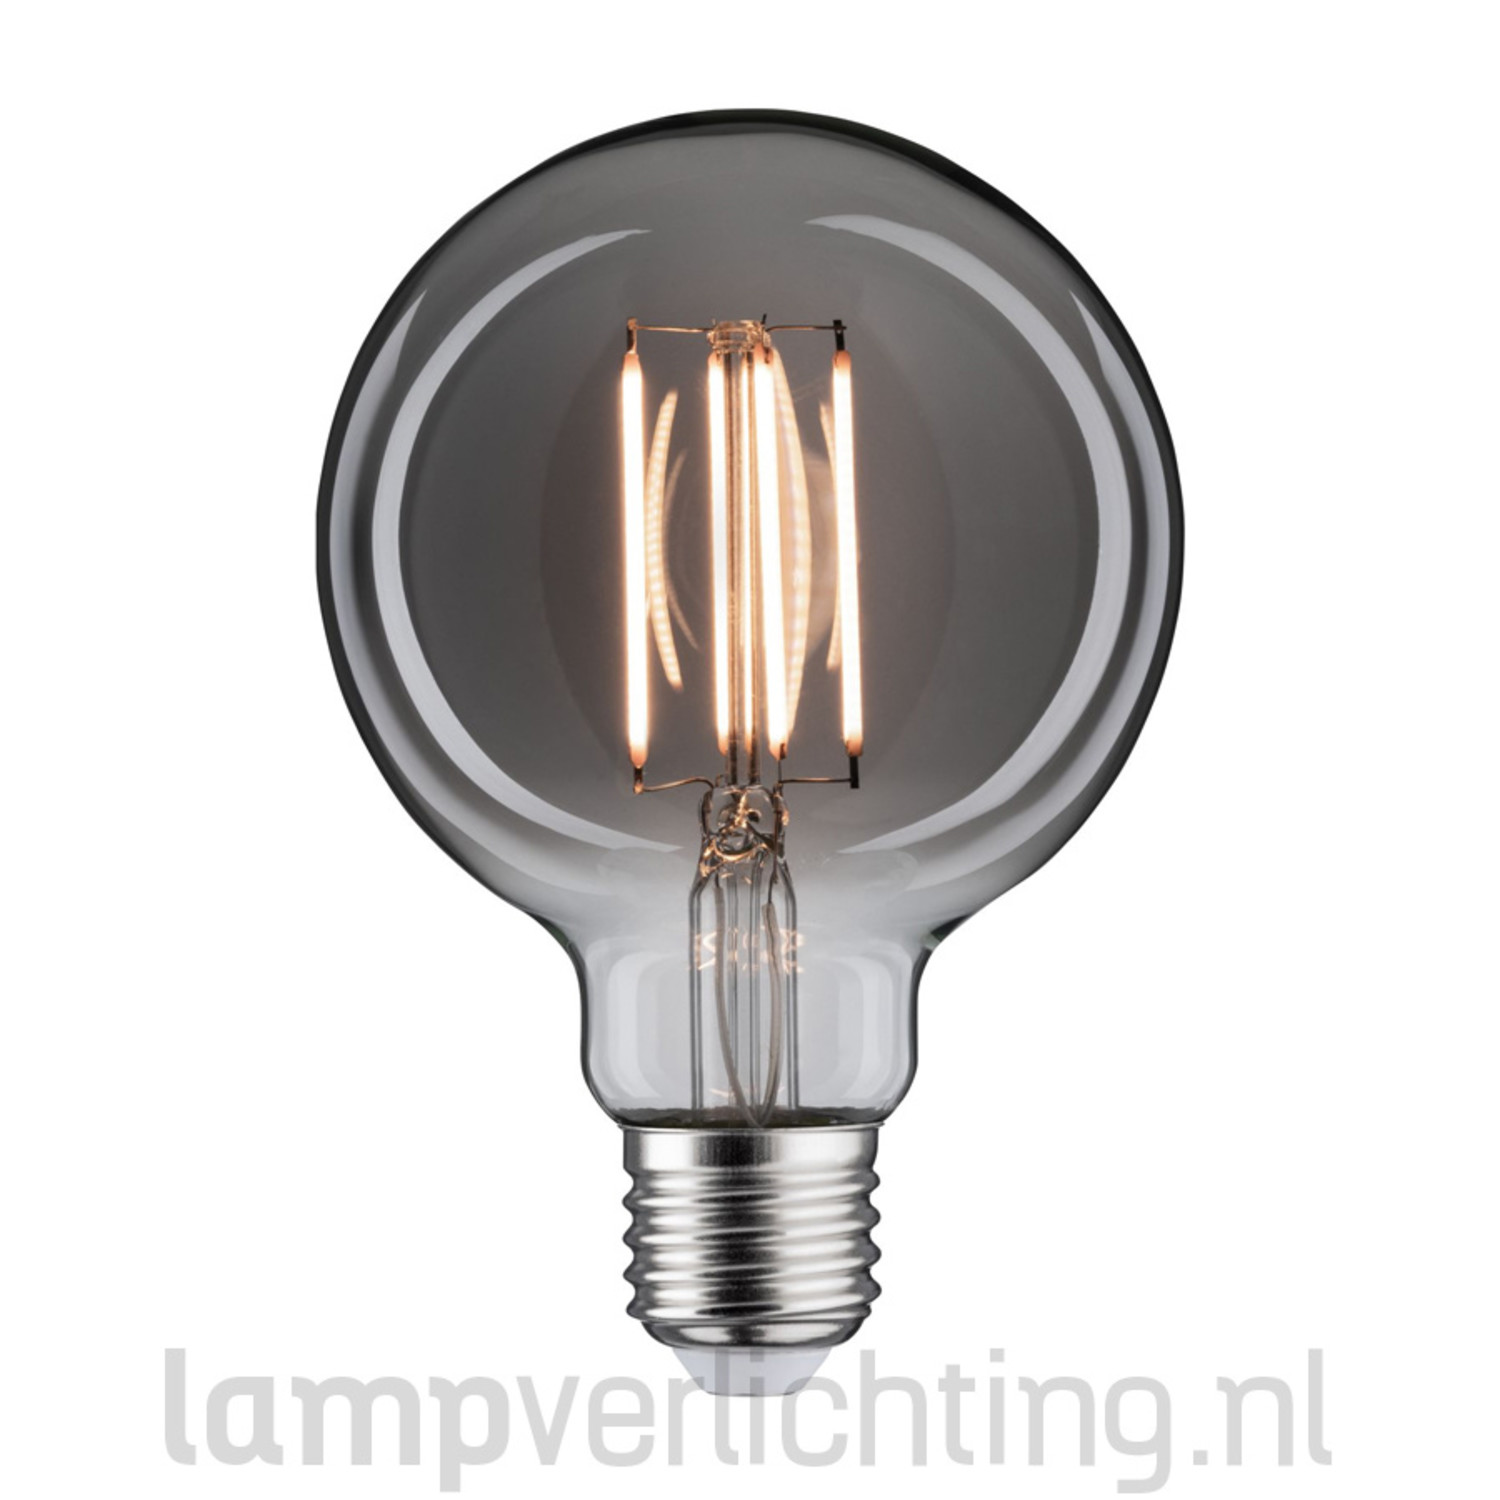 Televisie kijken Ingrijpen reparatie LED Filament Dimbaar E27 95mm Rookglas - Flame 1800K - Vintage ledlamp -  LampVerlichting.nl